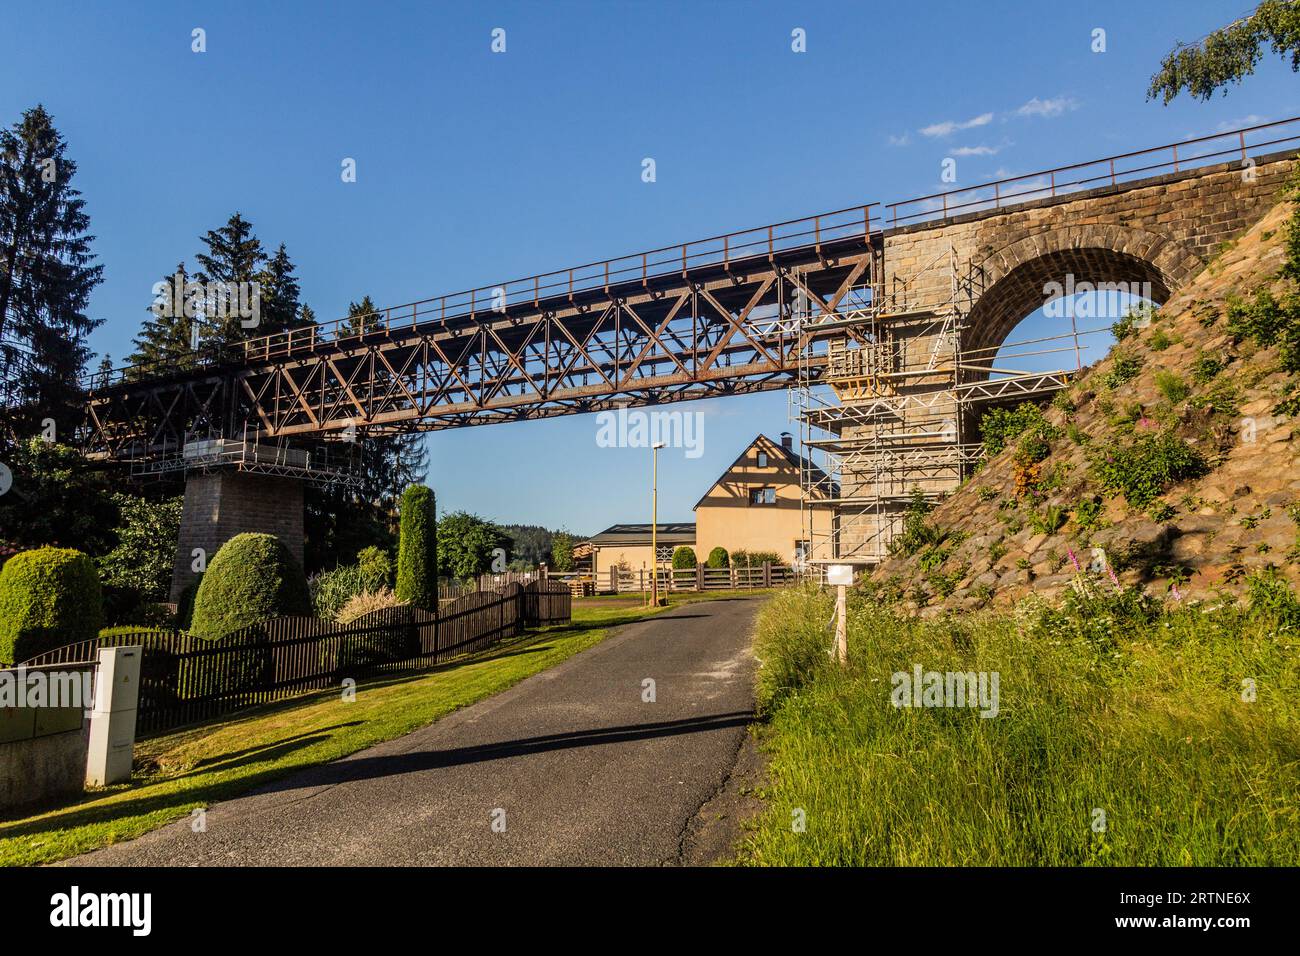 Railway bridge Vilemov, Czech Republic Stock Photo